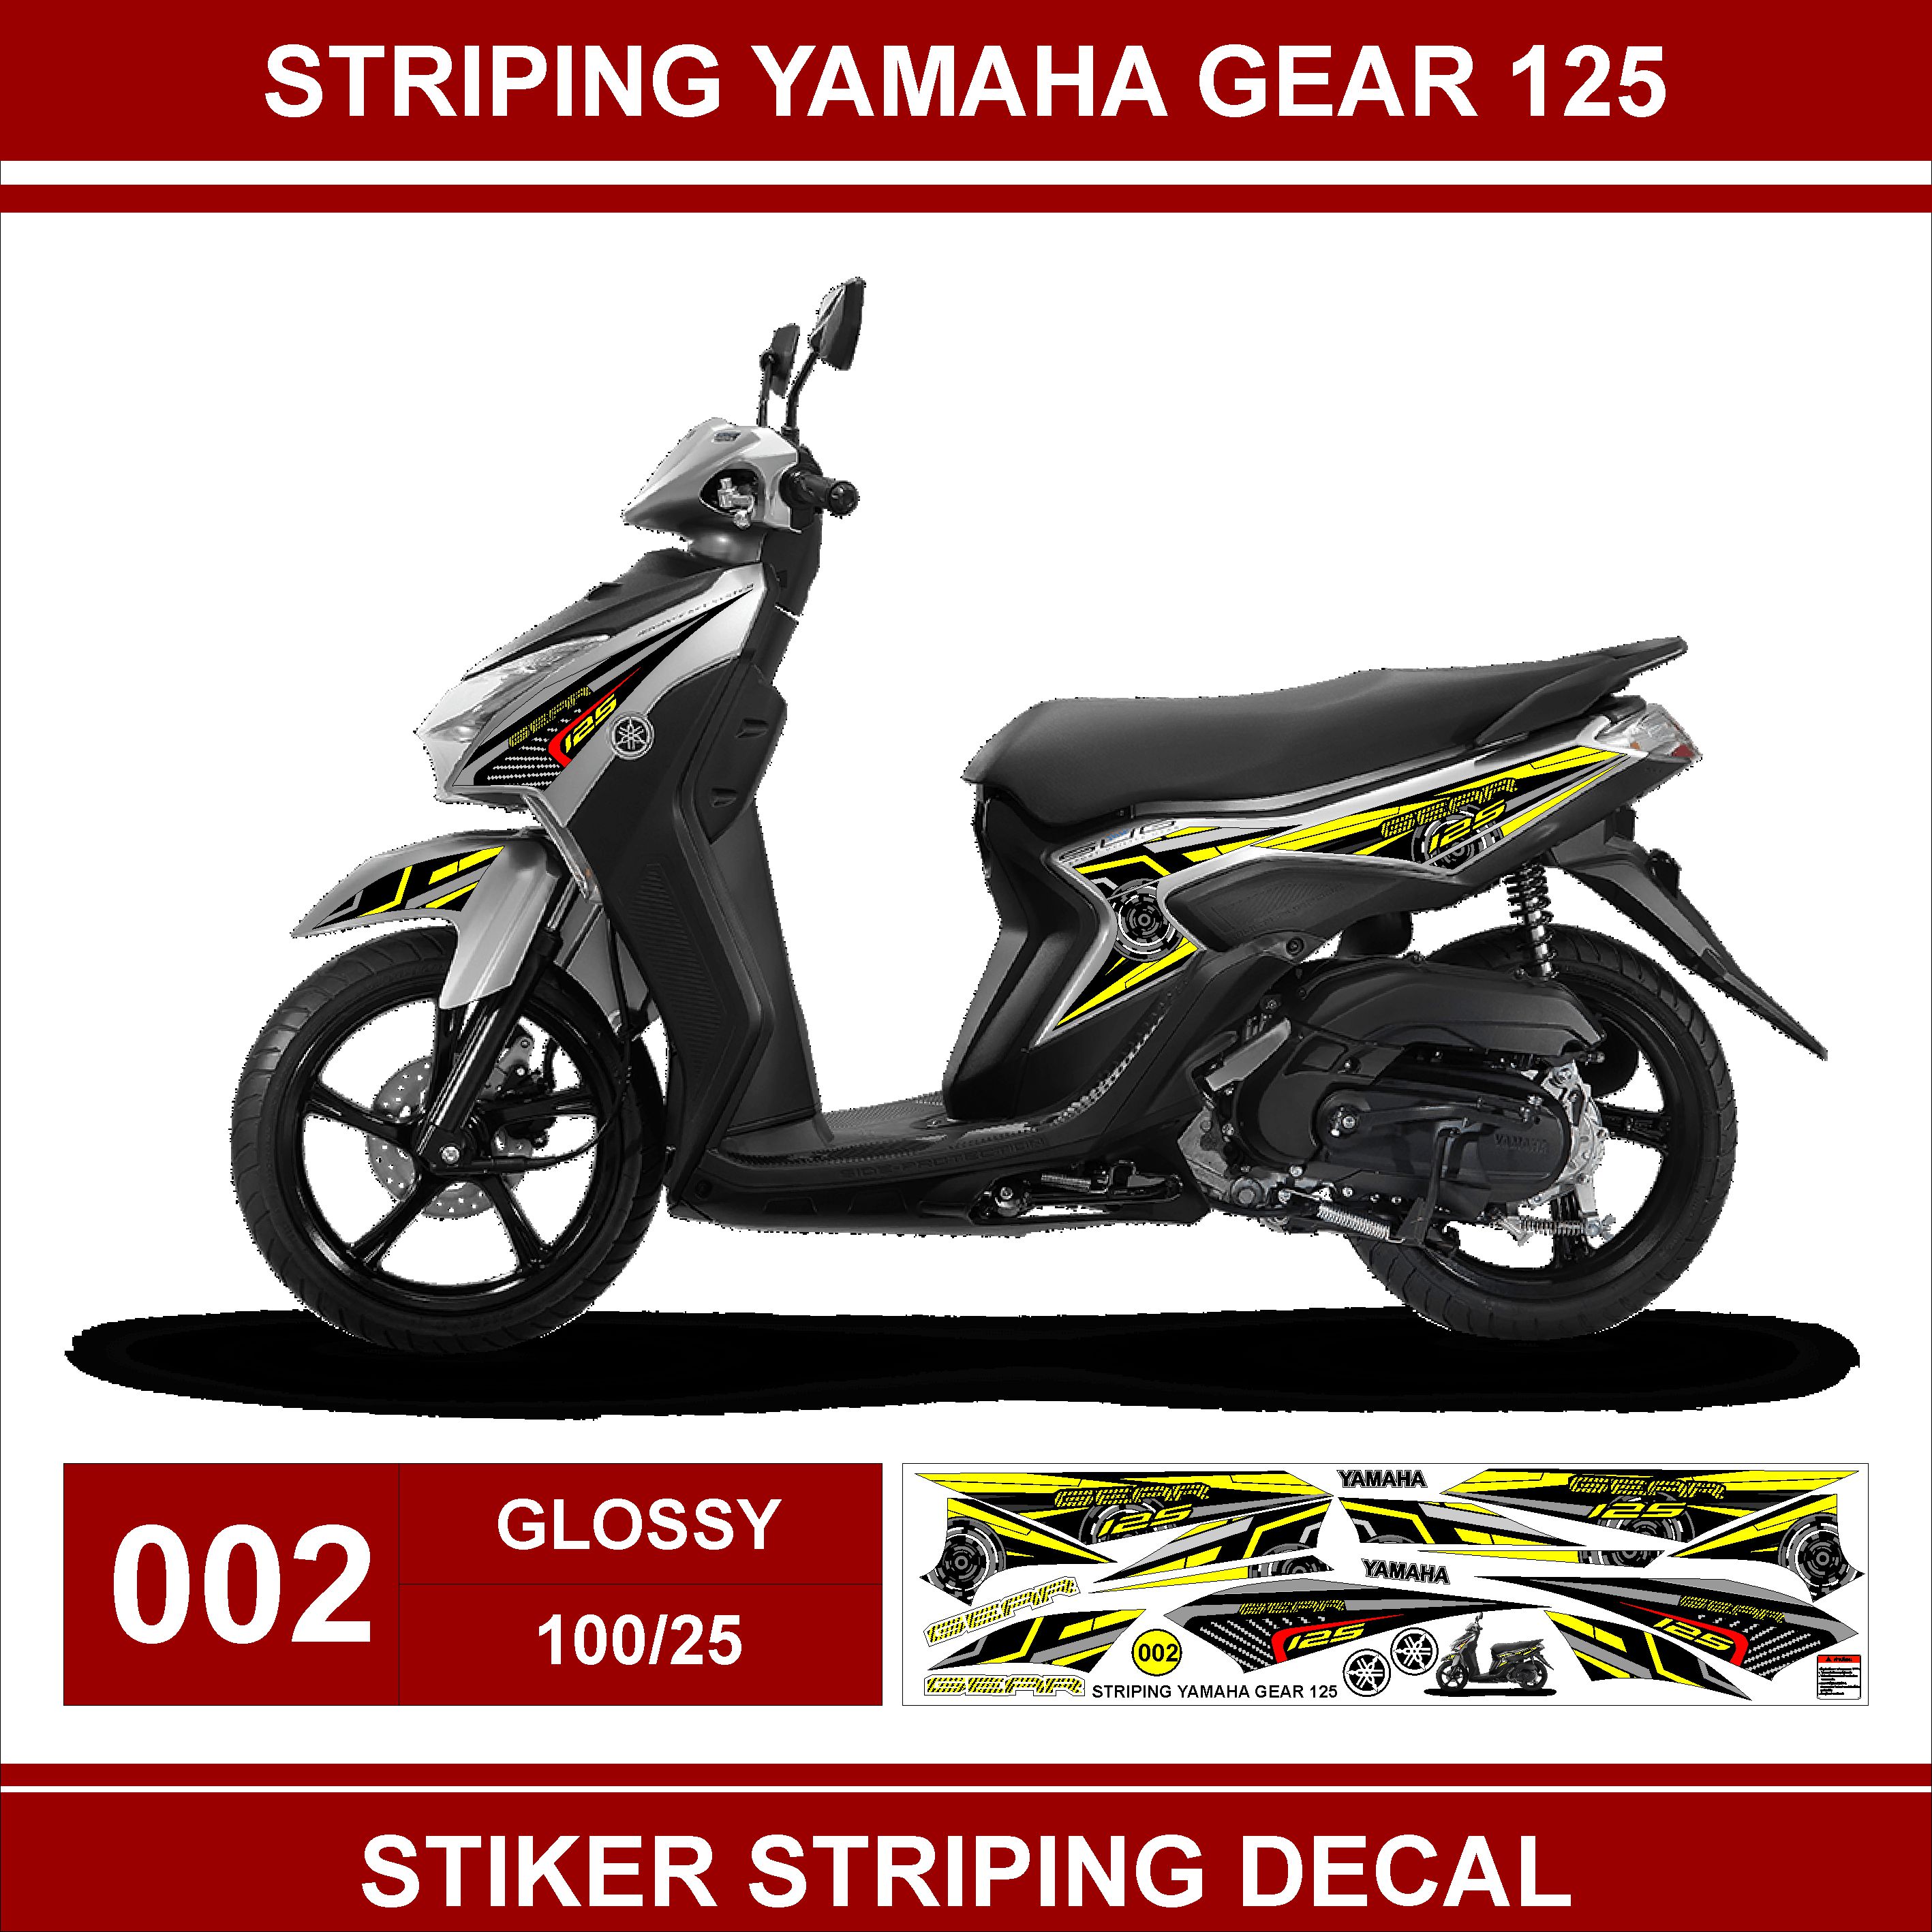 Stiker Striping Decal Yamaha Gear 125 Variasi AR Lazada Indonesia